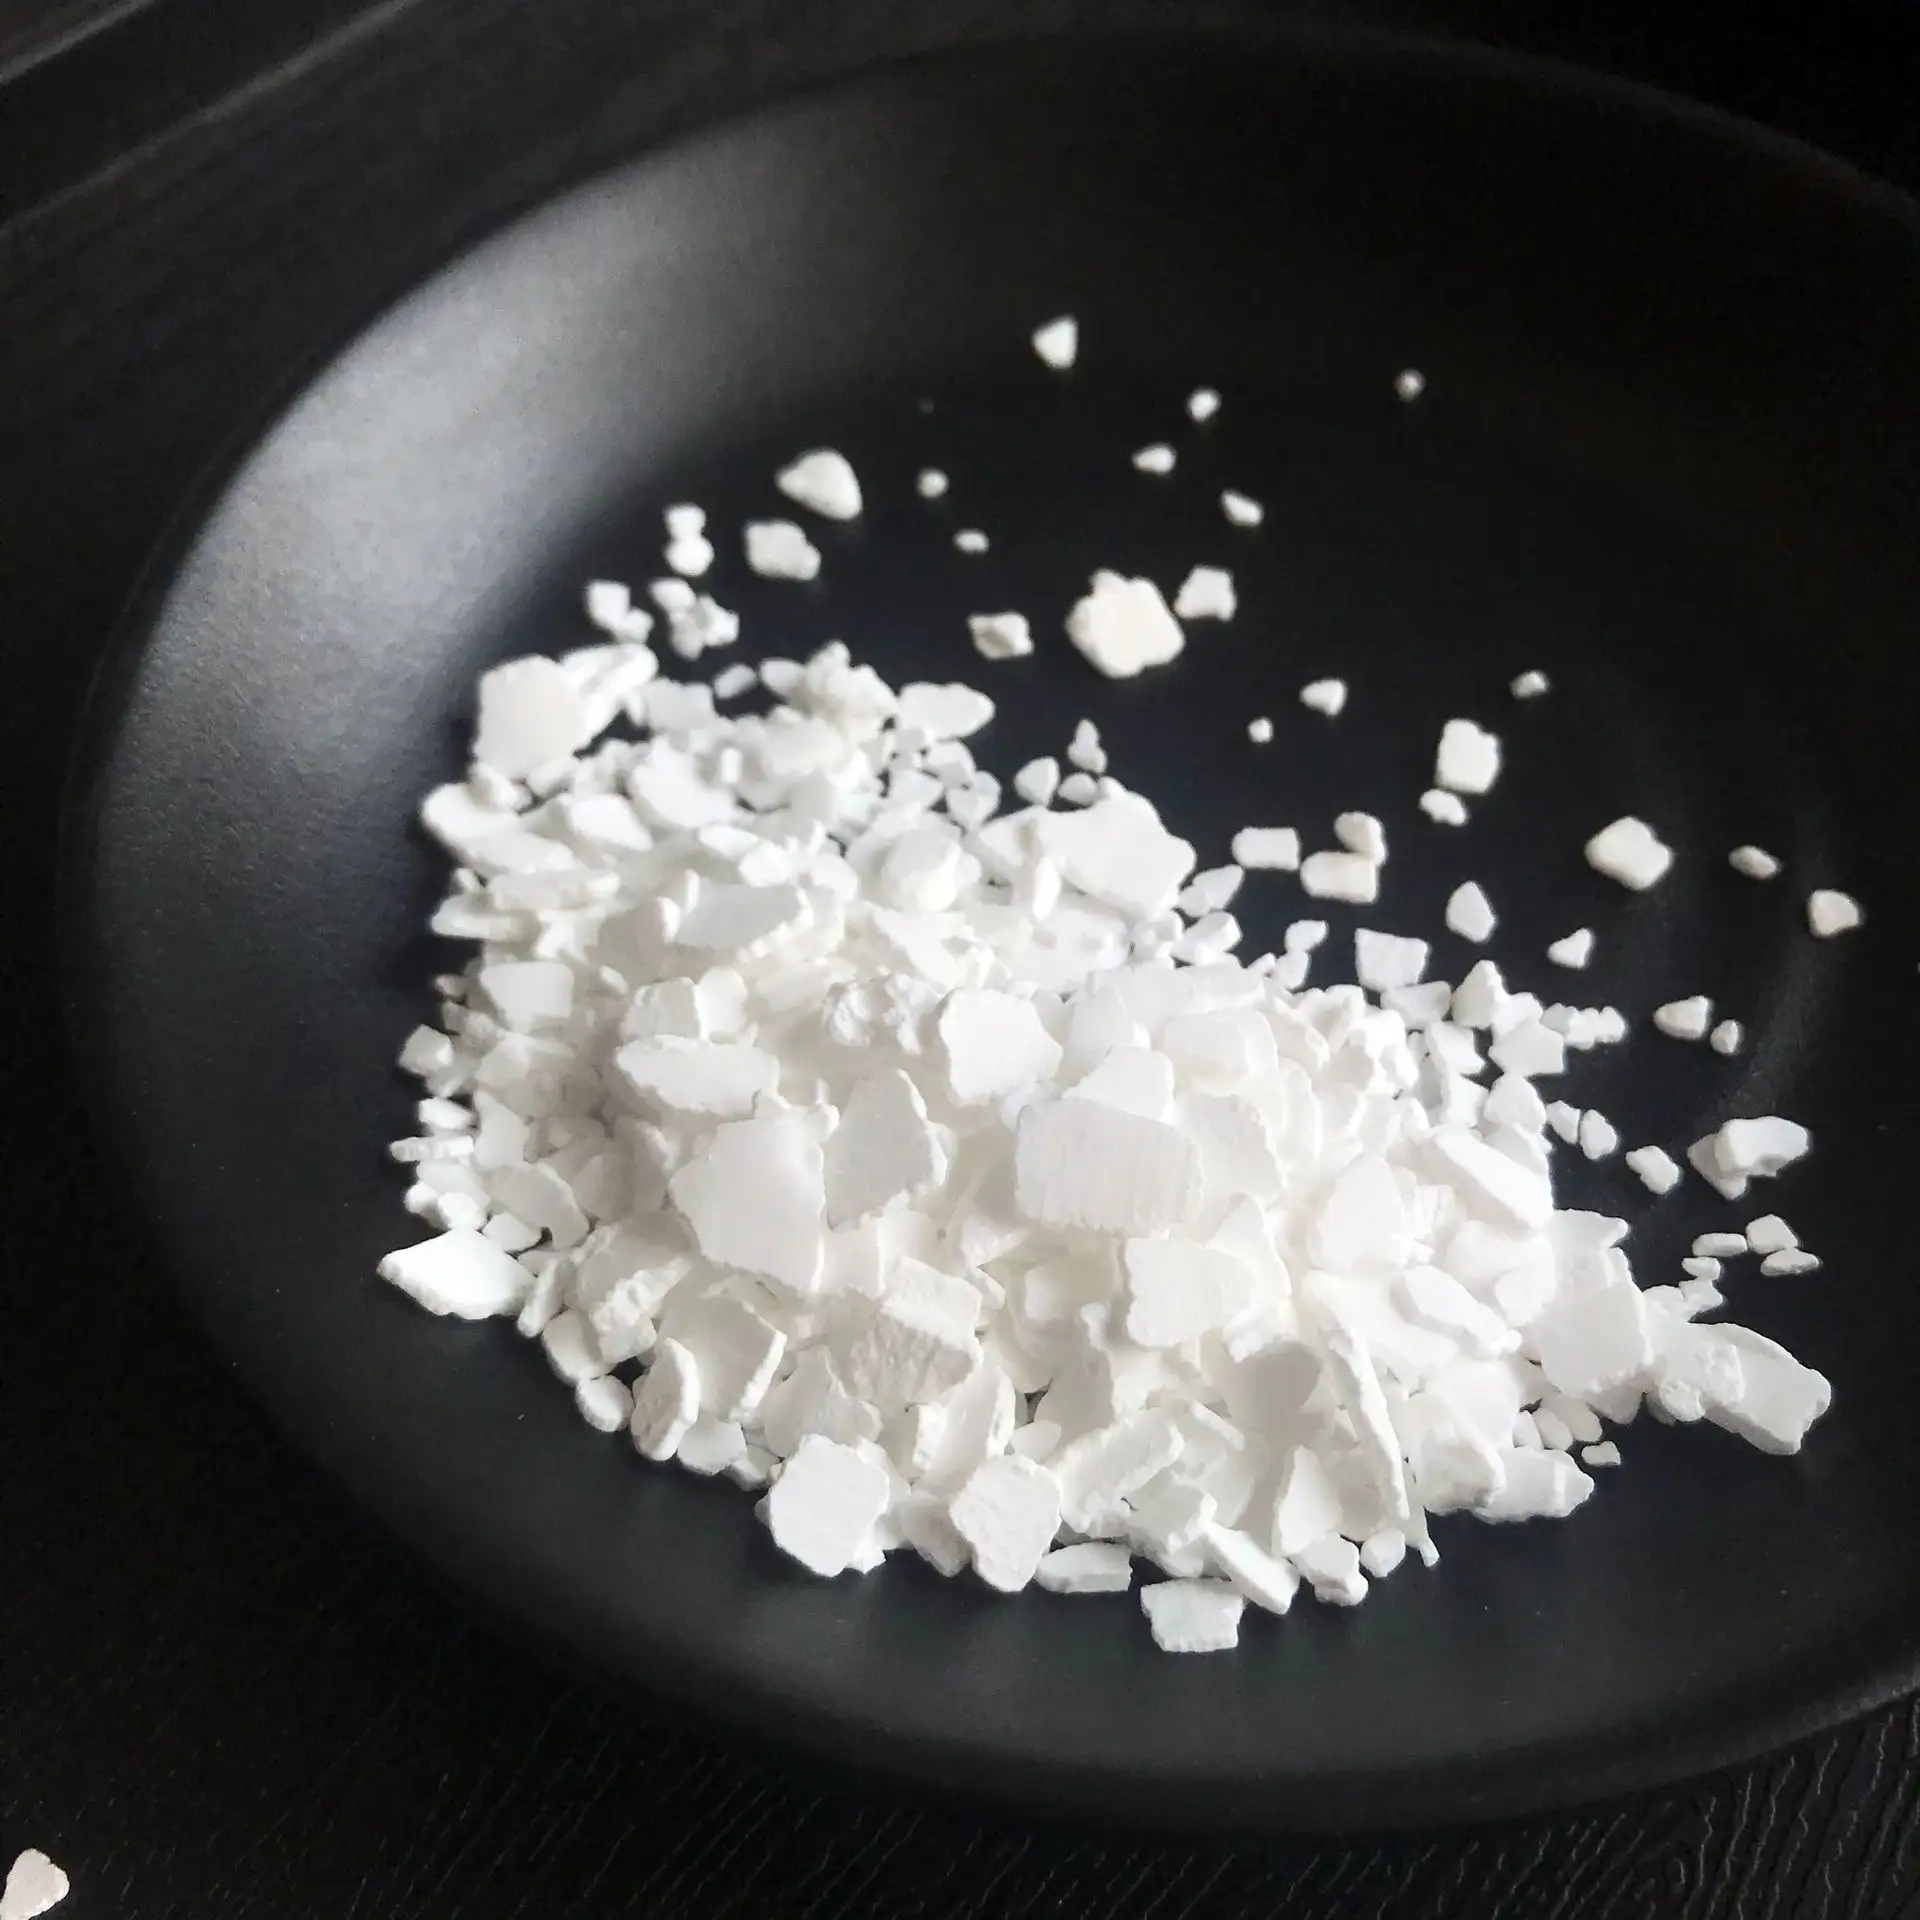 CaCl Chlorure de calcium industriel de haute qualité Qualité alimentaire 77% chlorure de calcium granulaire à haute teneur